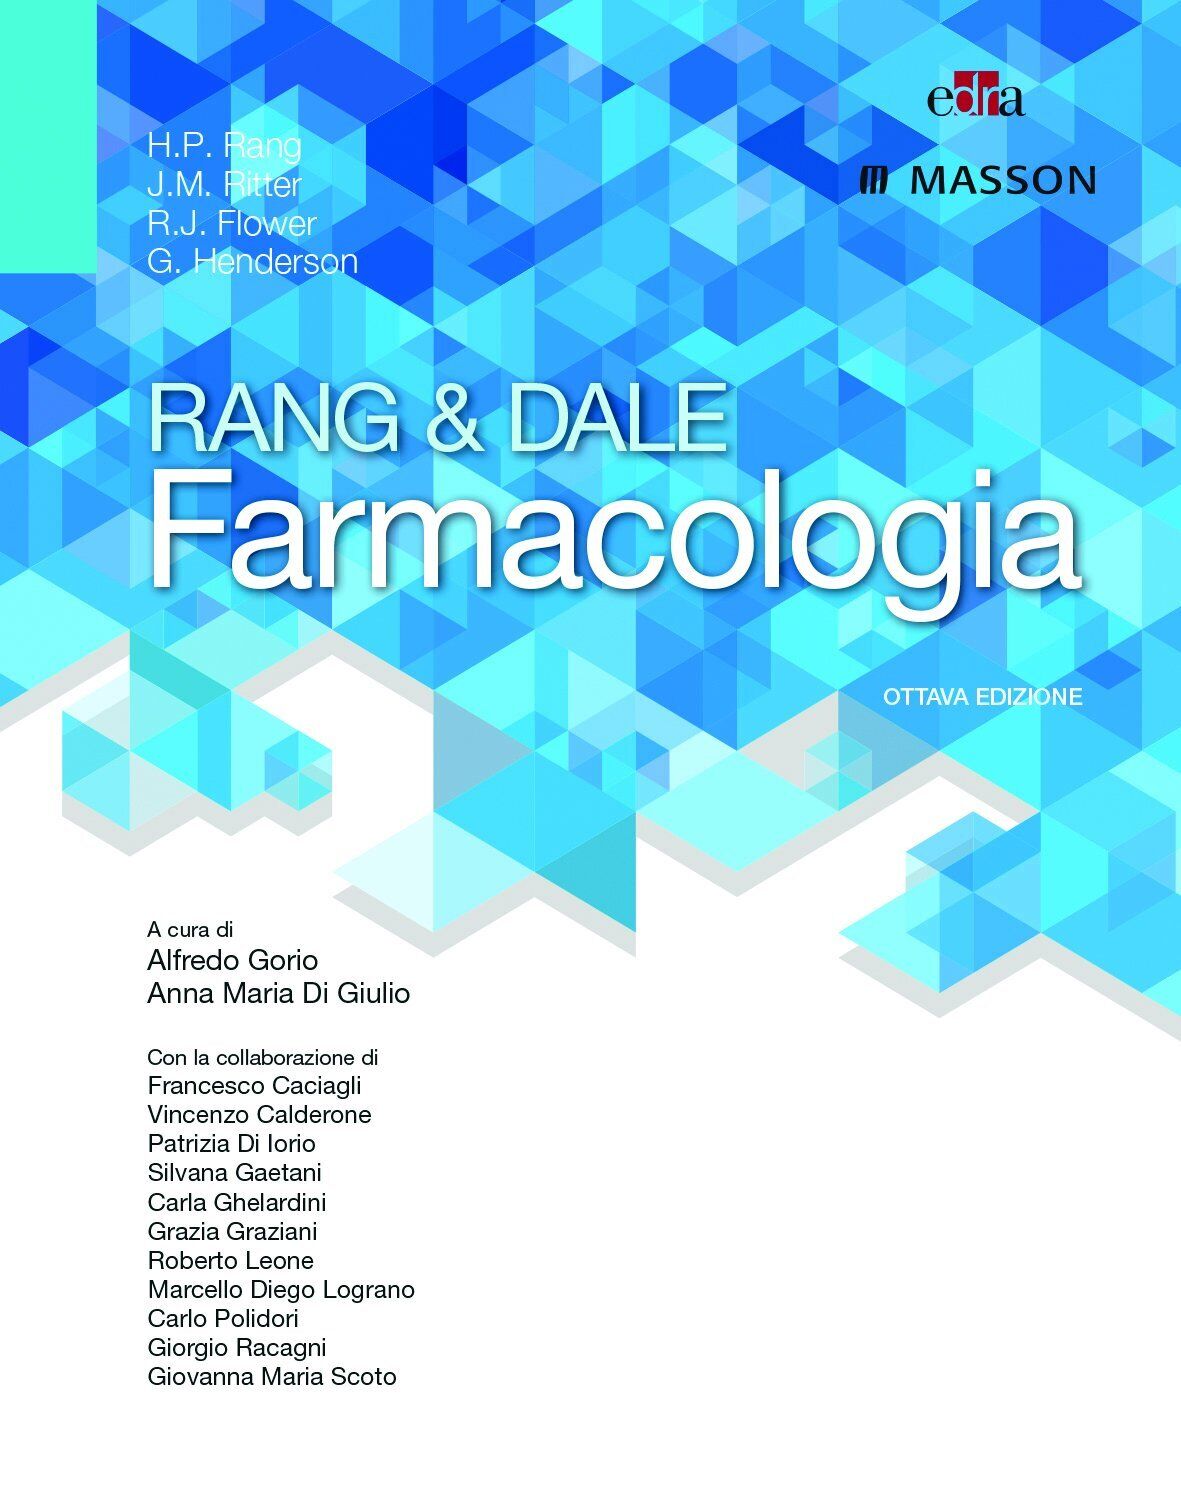 Rang & Dale farmacologia - A. Gorio, A. M. Di Giulio - Edra, 2016